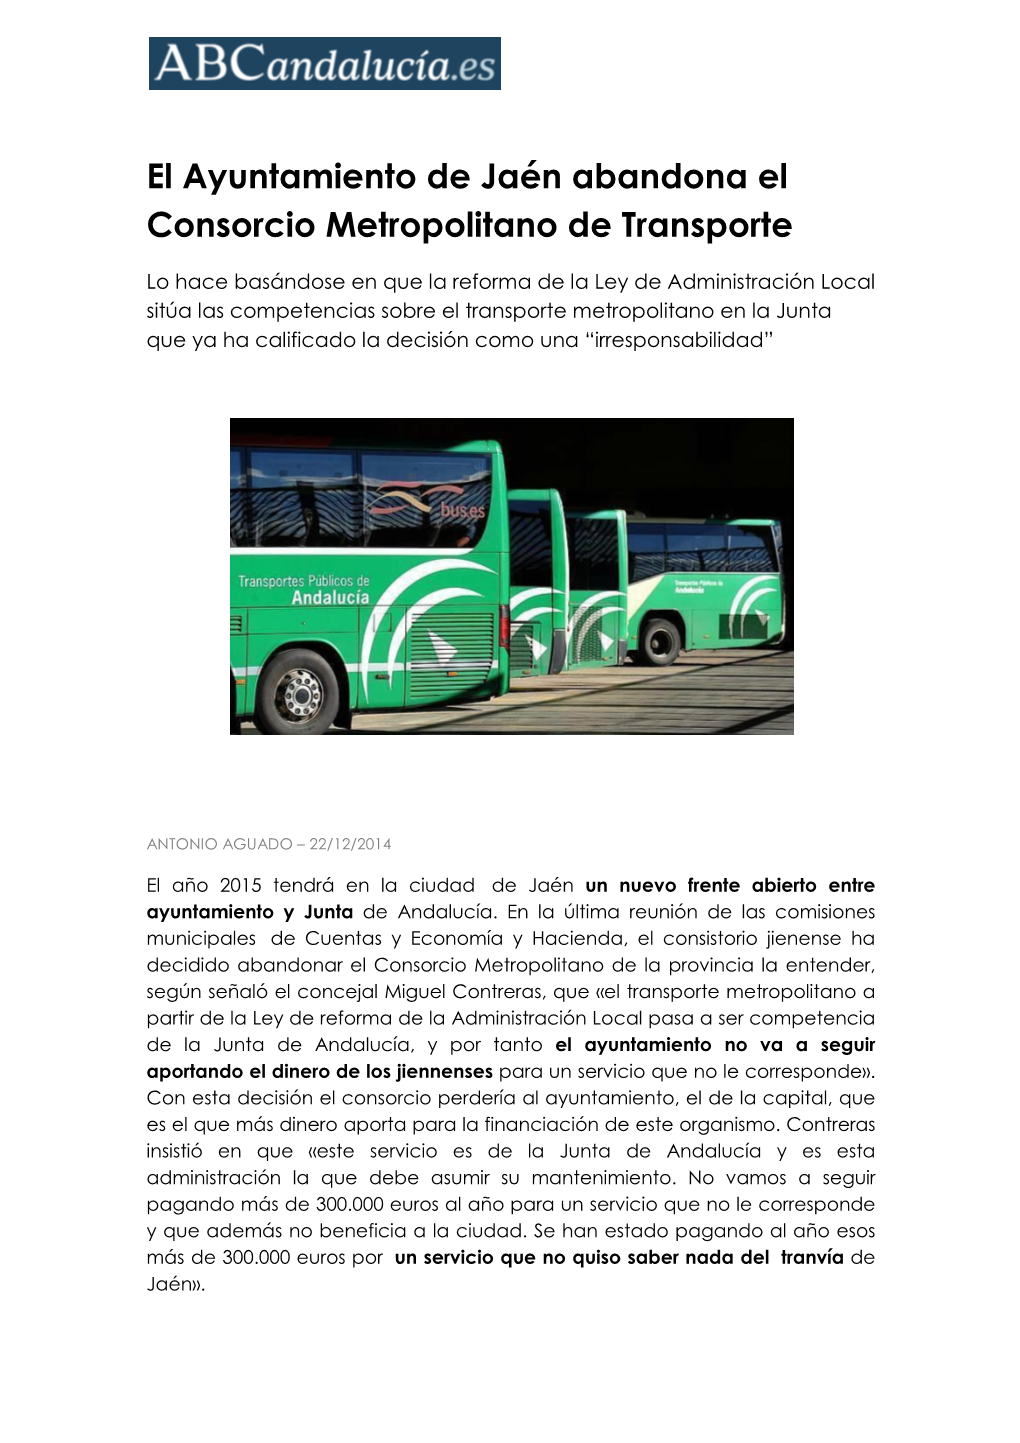 El Ayuntamiento De Jaén Abandona El Consorcio Metropolitano De Transporte